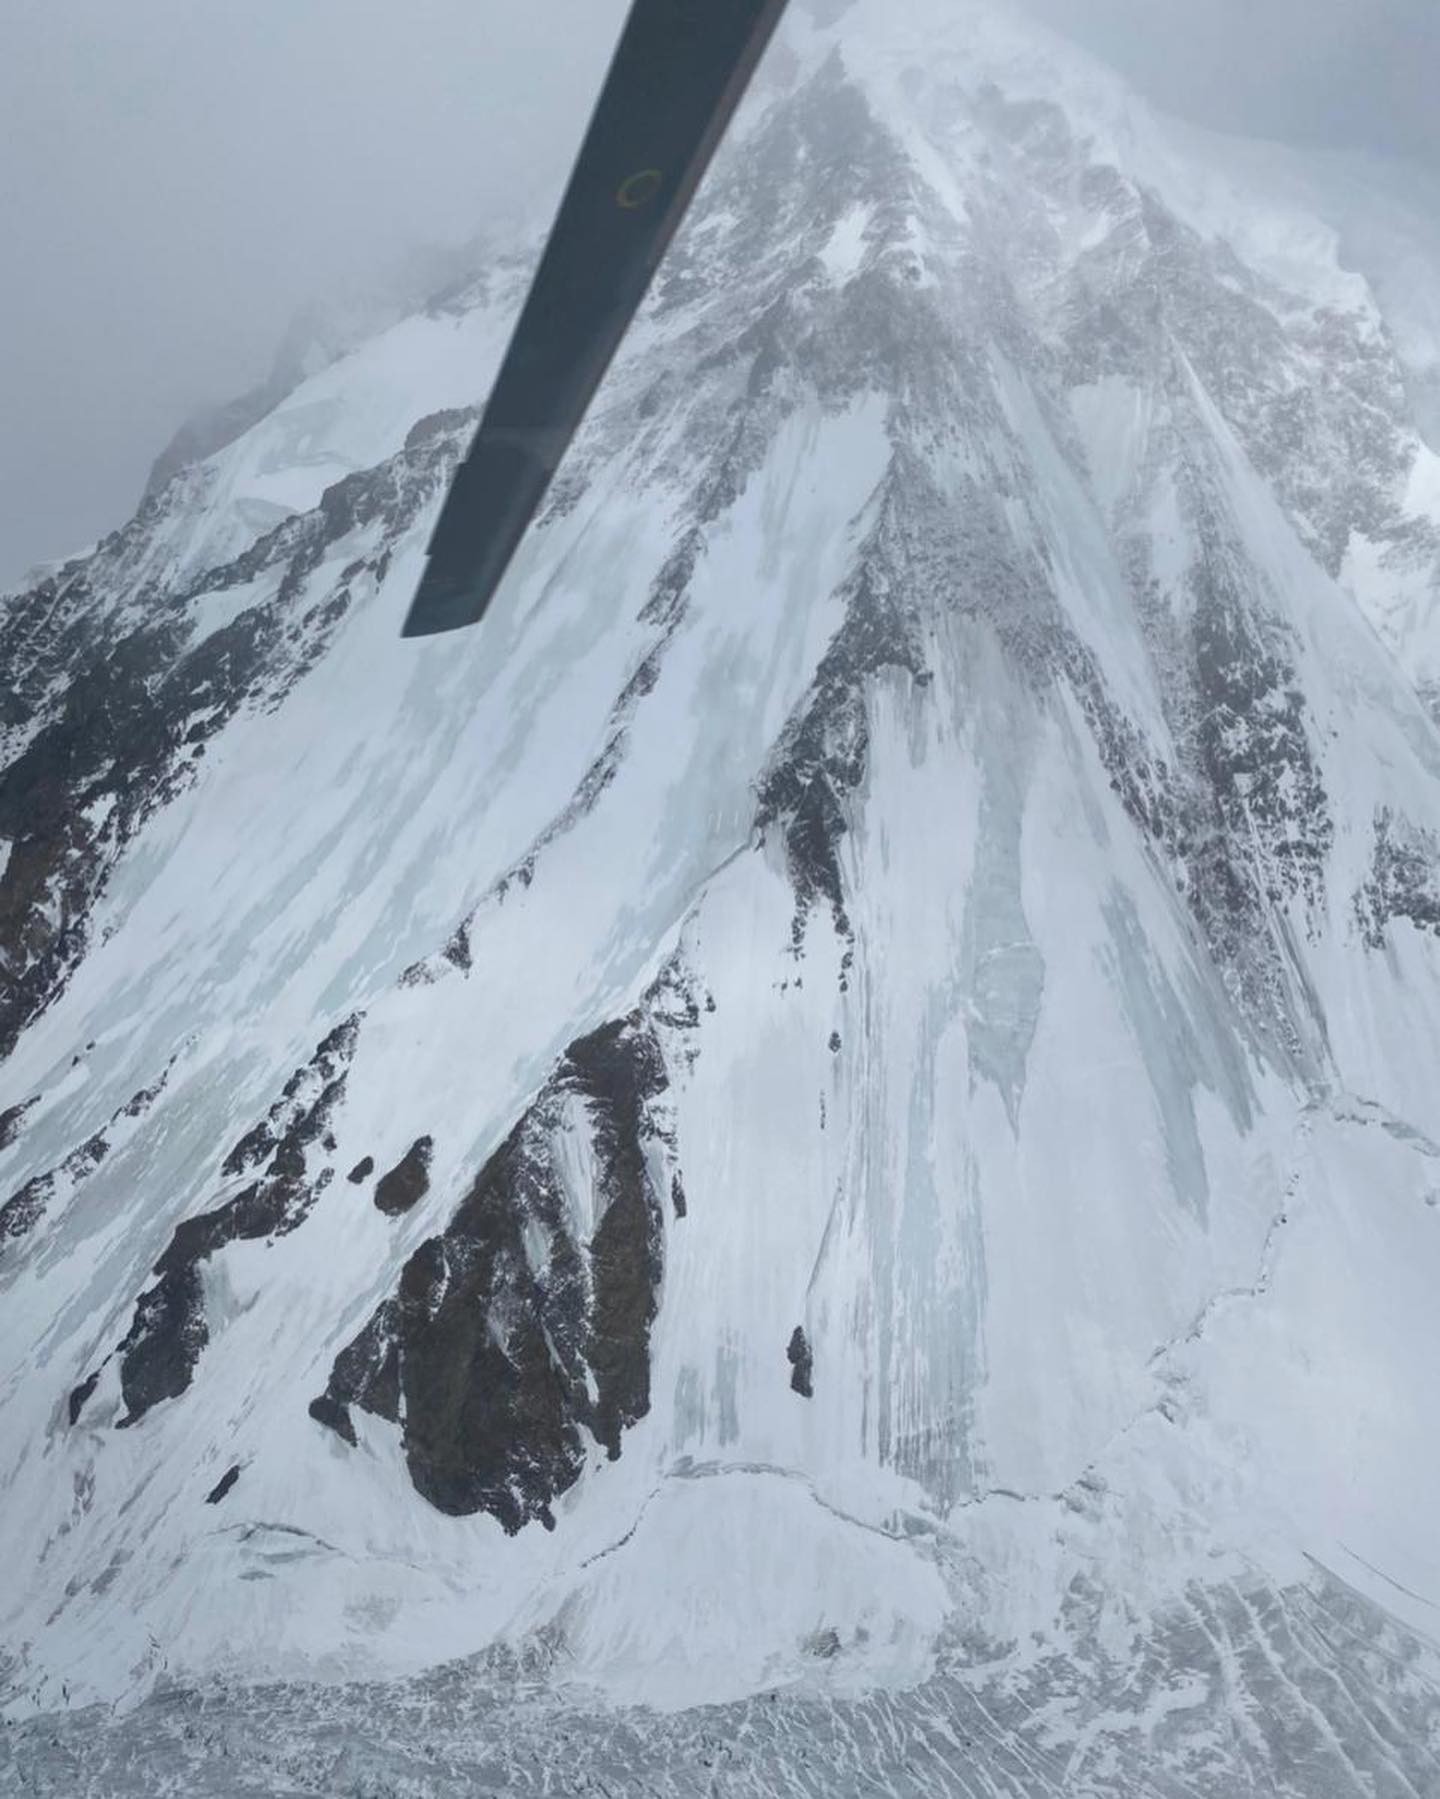 8 февраля состоялся третий облет горы К2 спасателями. Фото Chhang Dawa Sherpa